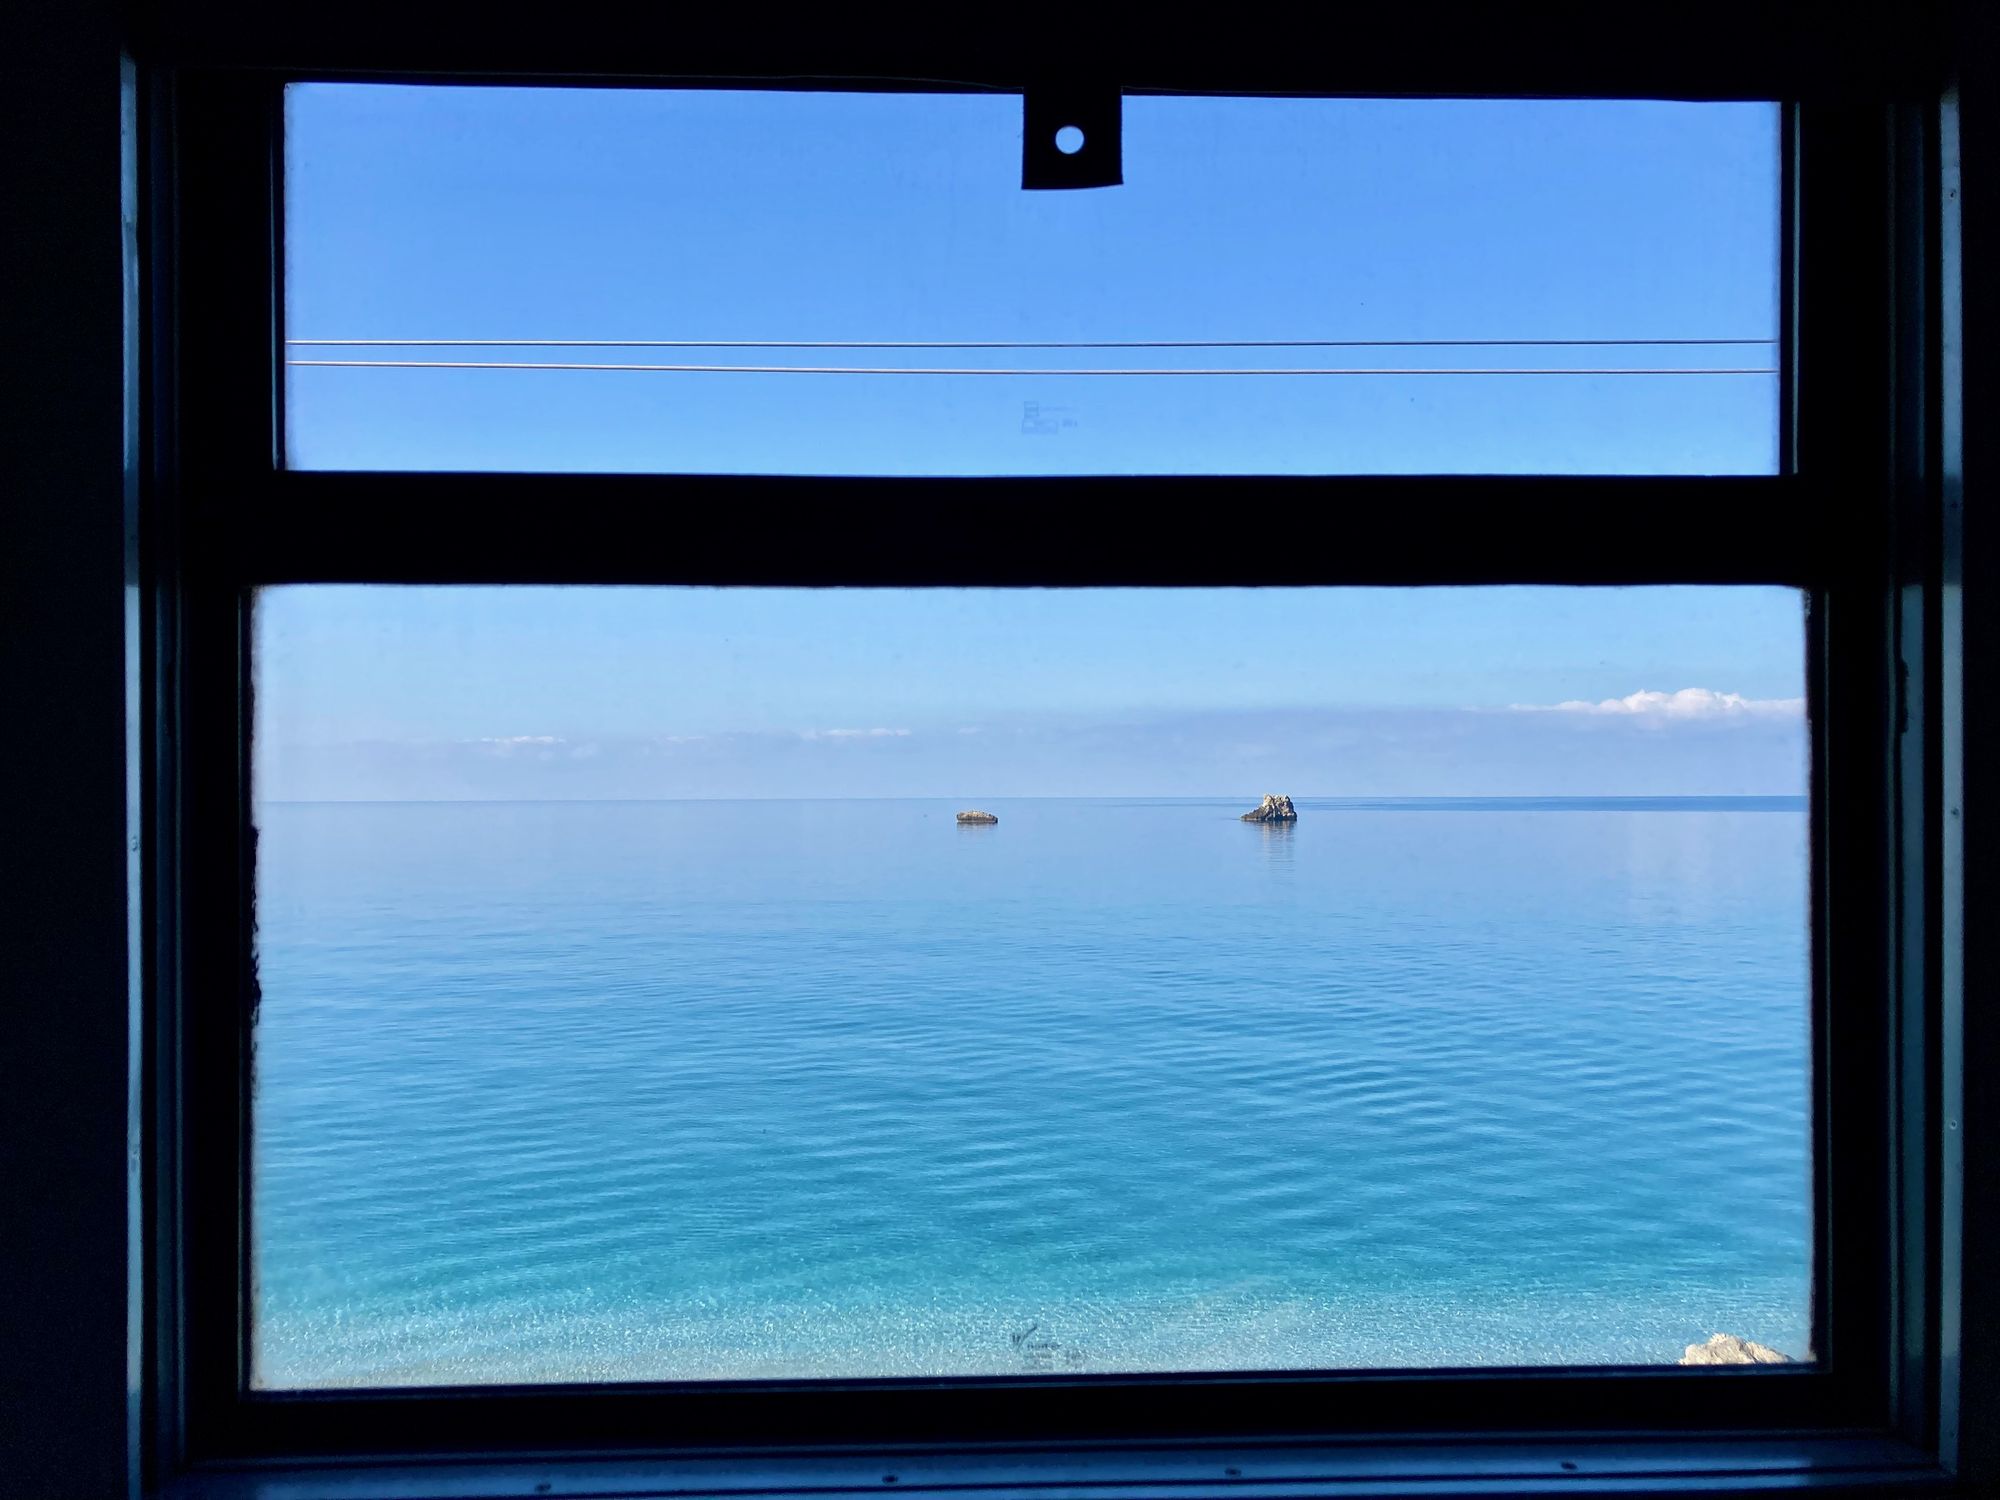 Ausblick aus dem Abteilfenster mit türkisblauem Meer